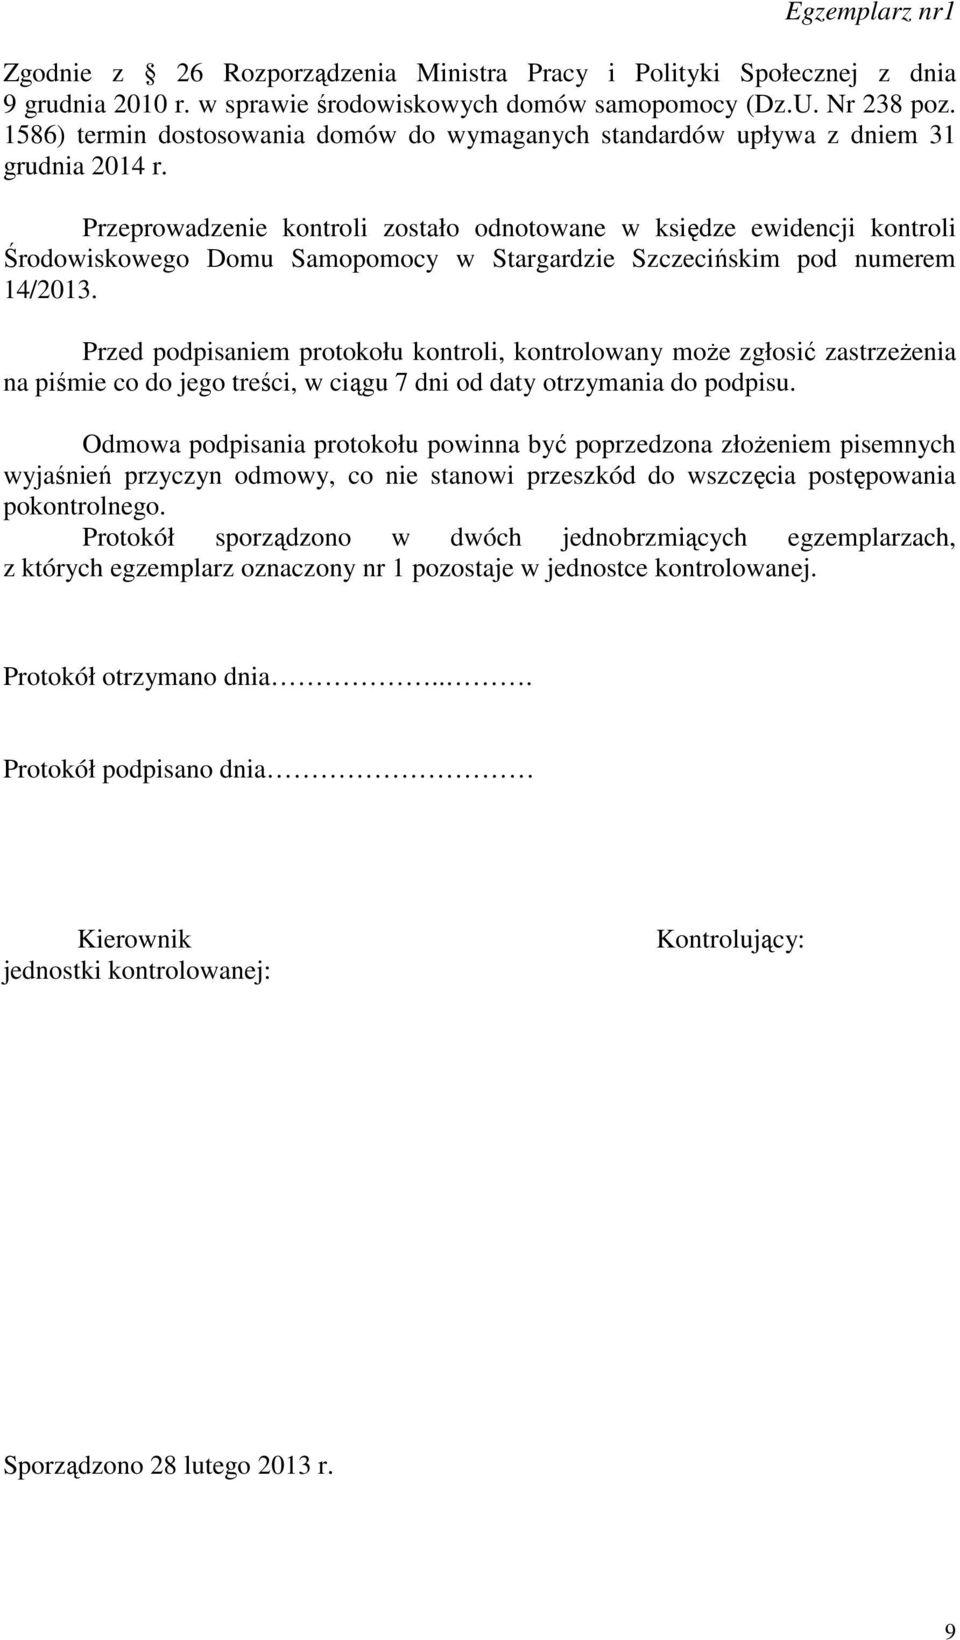 Przeprowadzenie kontroli zostało odnotowane w księdze ewidencji kontroli Środowiskowego Domu Samopomocy w Stargardzie Szczecińskim pod numerem 14/2013.